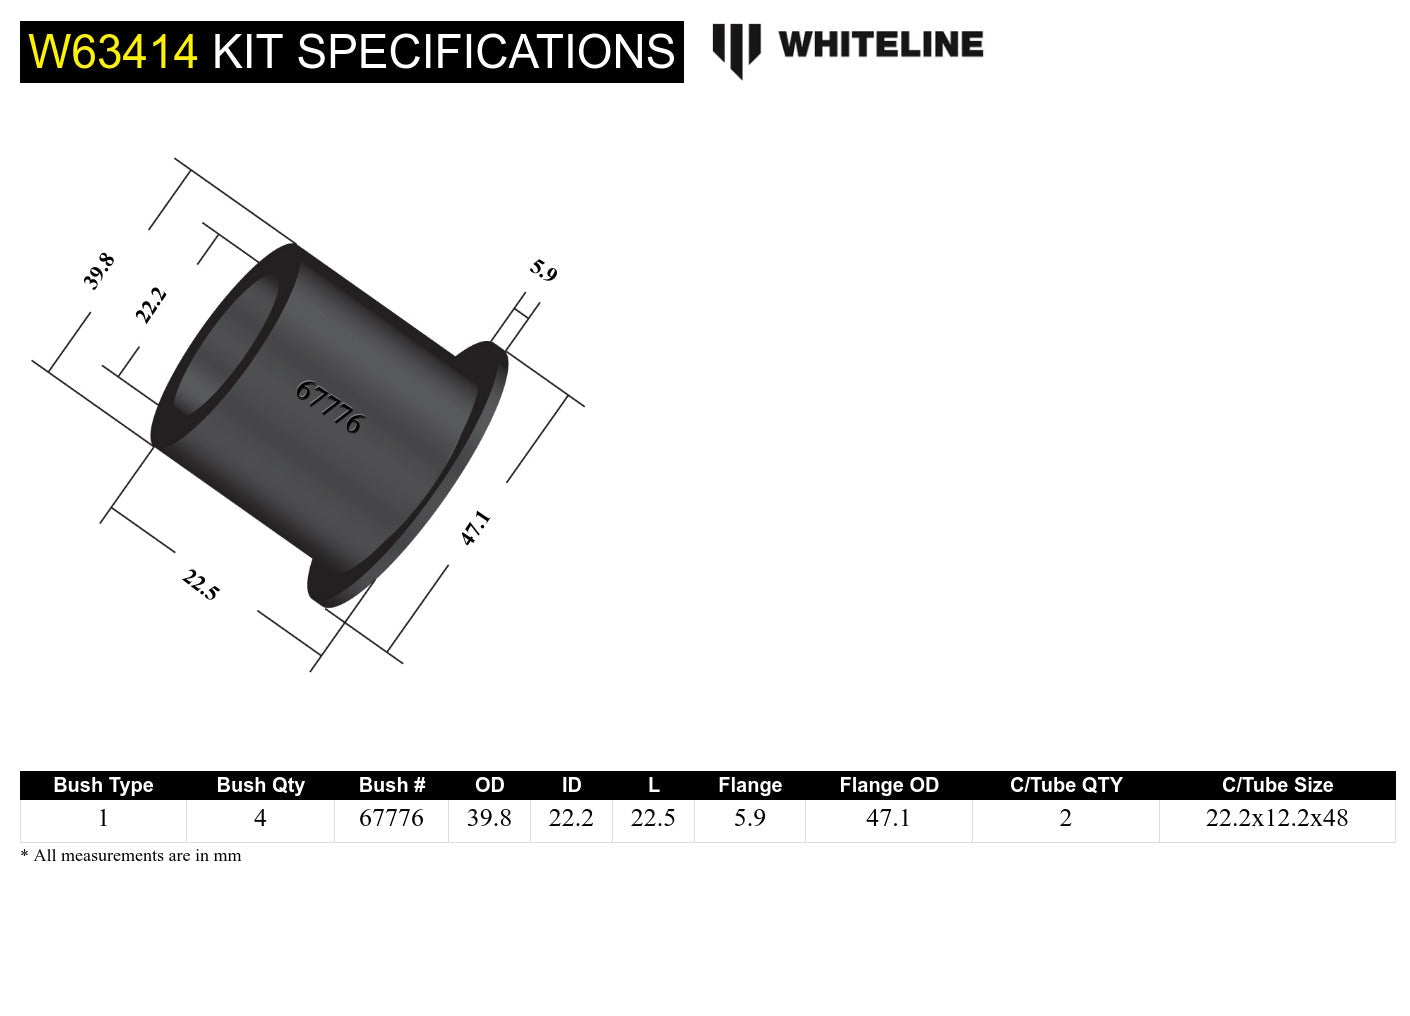 KDT923 bushings de support externe de montage du différentiel arrière - Subaru BRZ & Scion FRS 2012-2020